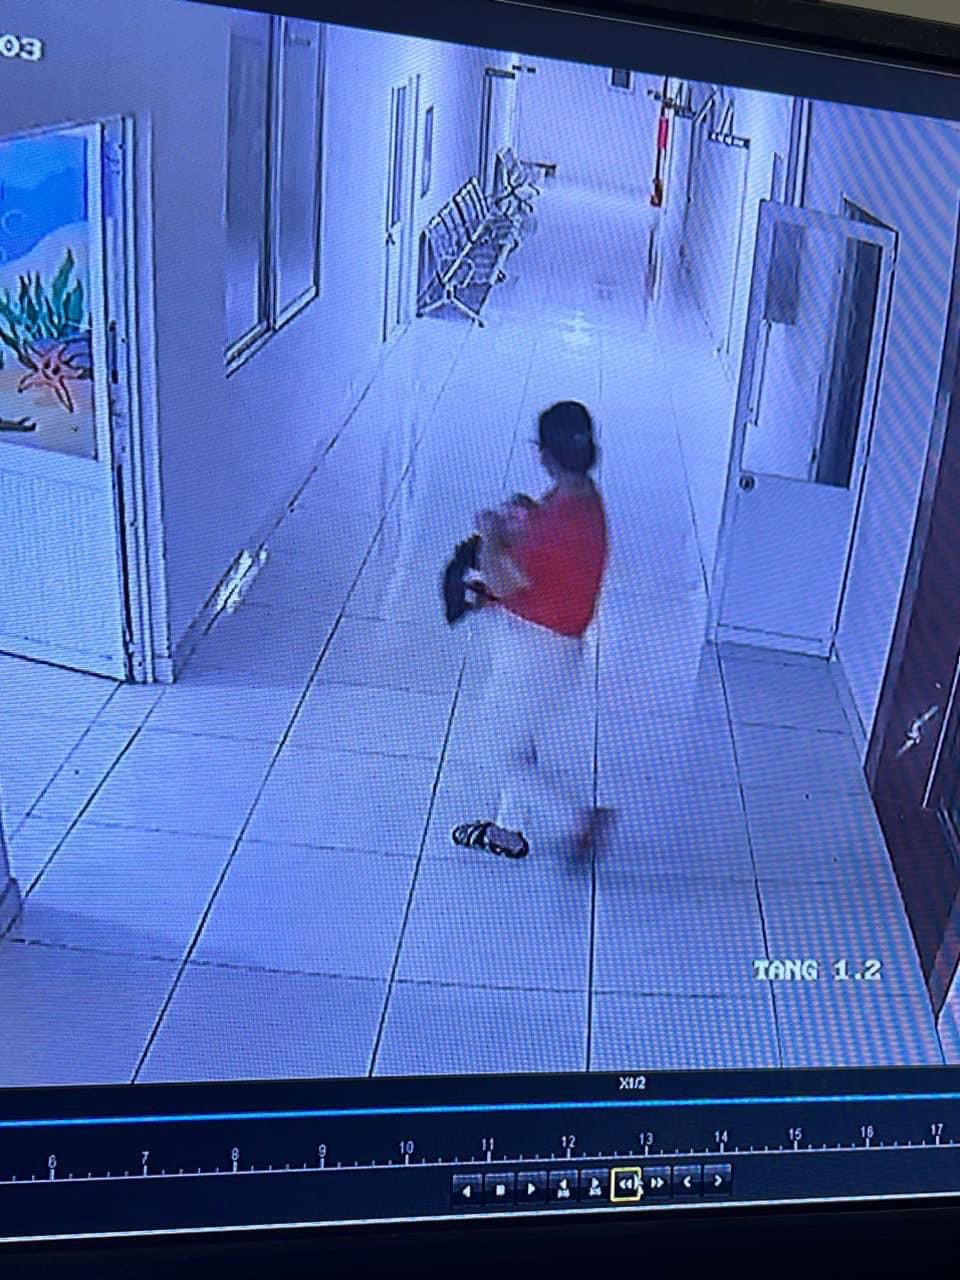 Camera hình ảnh nghi phạm bế em bé khỏi bệnh viện